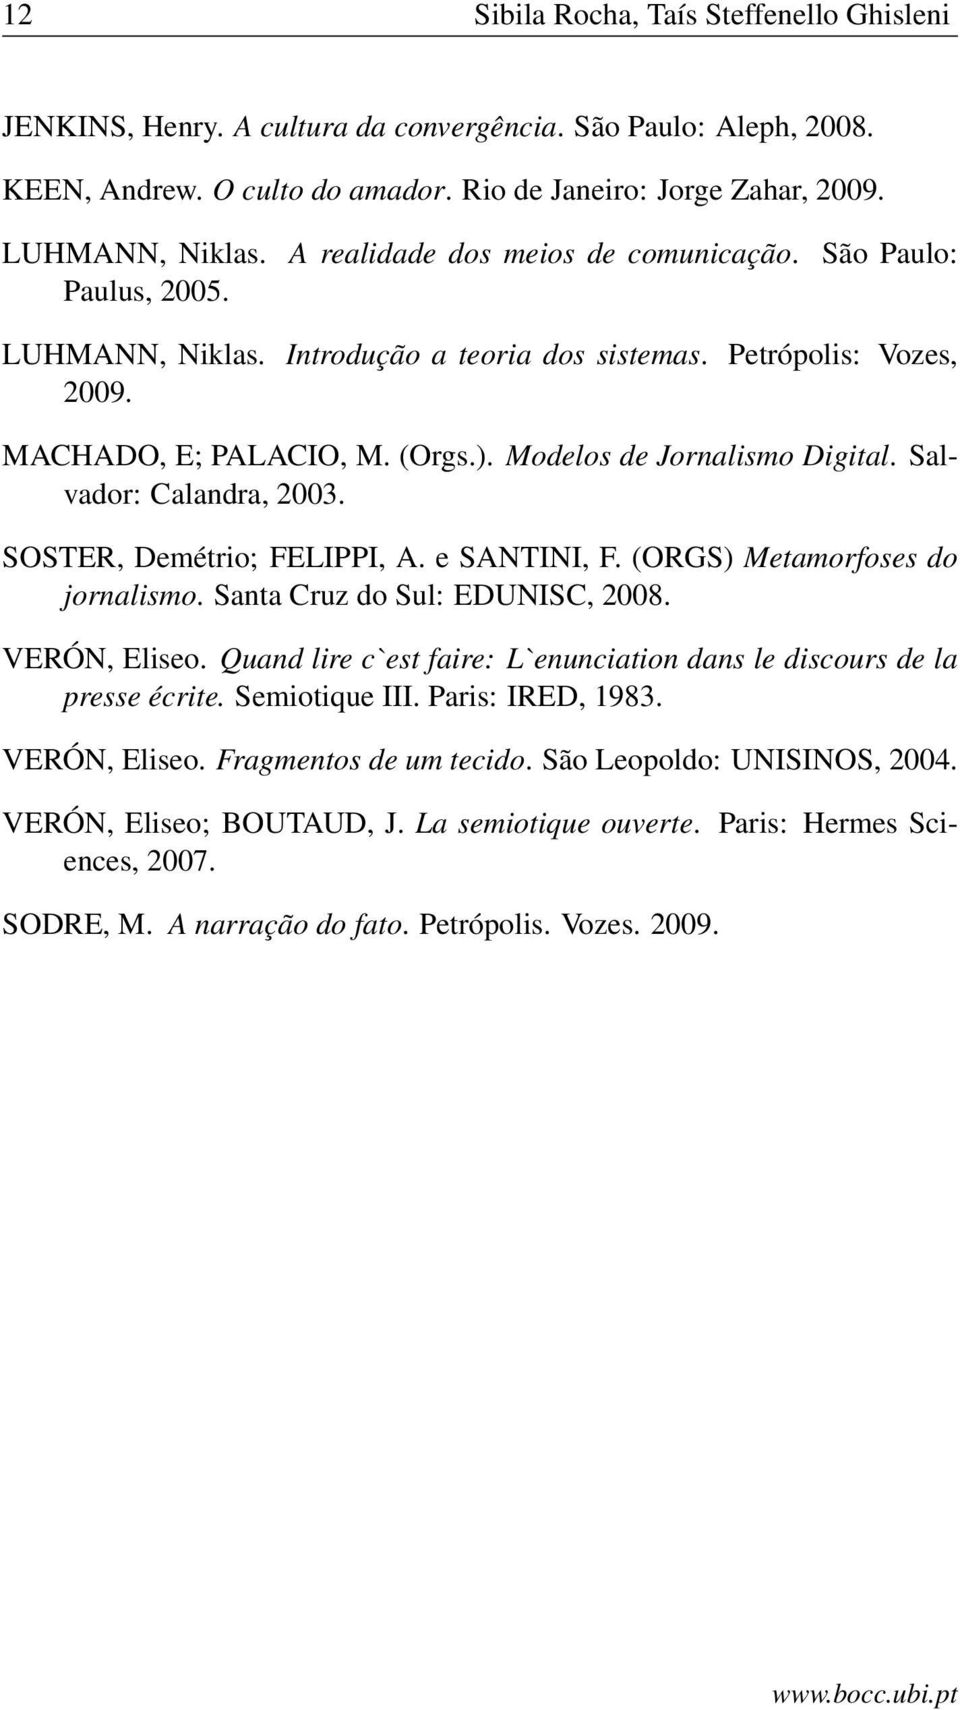 Modelos de Jornalismo Digital. Salvador: Calandra, 2003. SOSTER, Demétrio; FELIPPI, A. e SANTINI, F. (ORGS) Metamorfoses do jornalismo. Santa Cruz do Sul: EDUNISC, 2008. VERÓN, Eliseo.